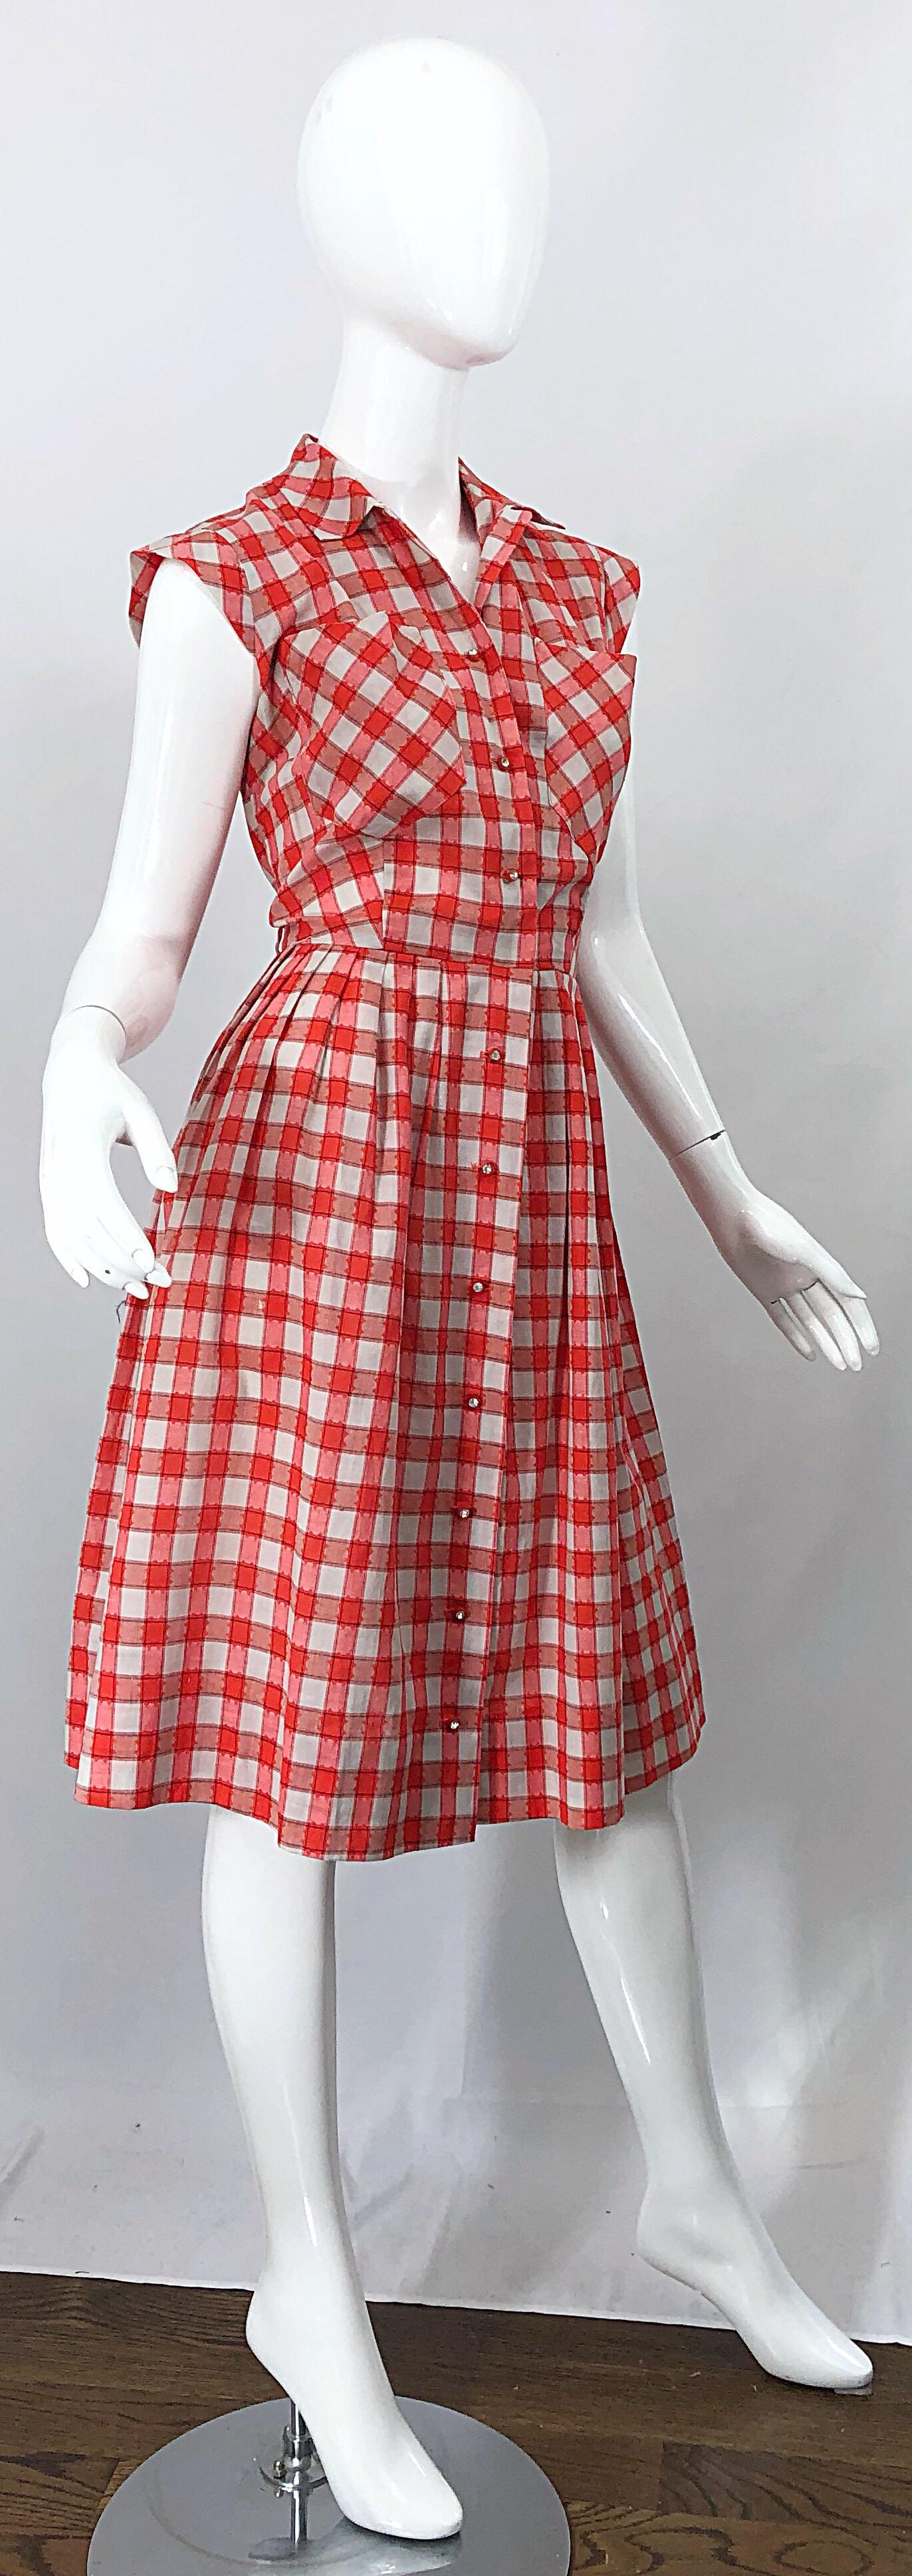 vintage plaid dress 50s